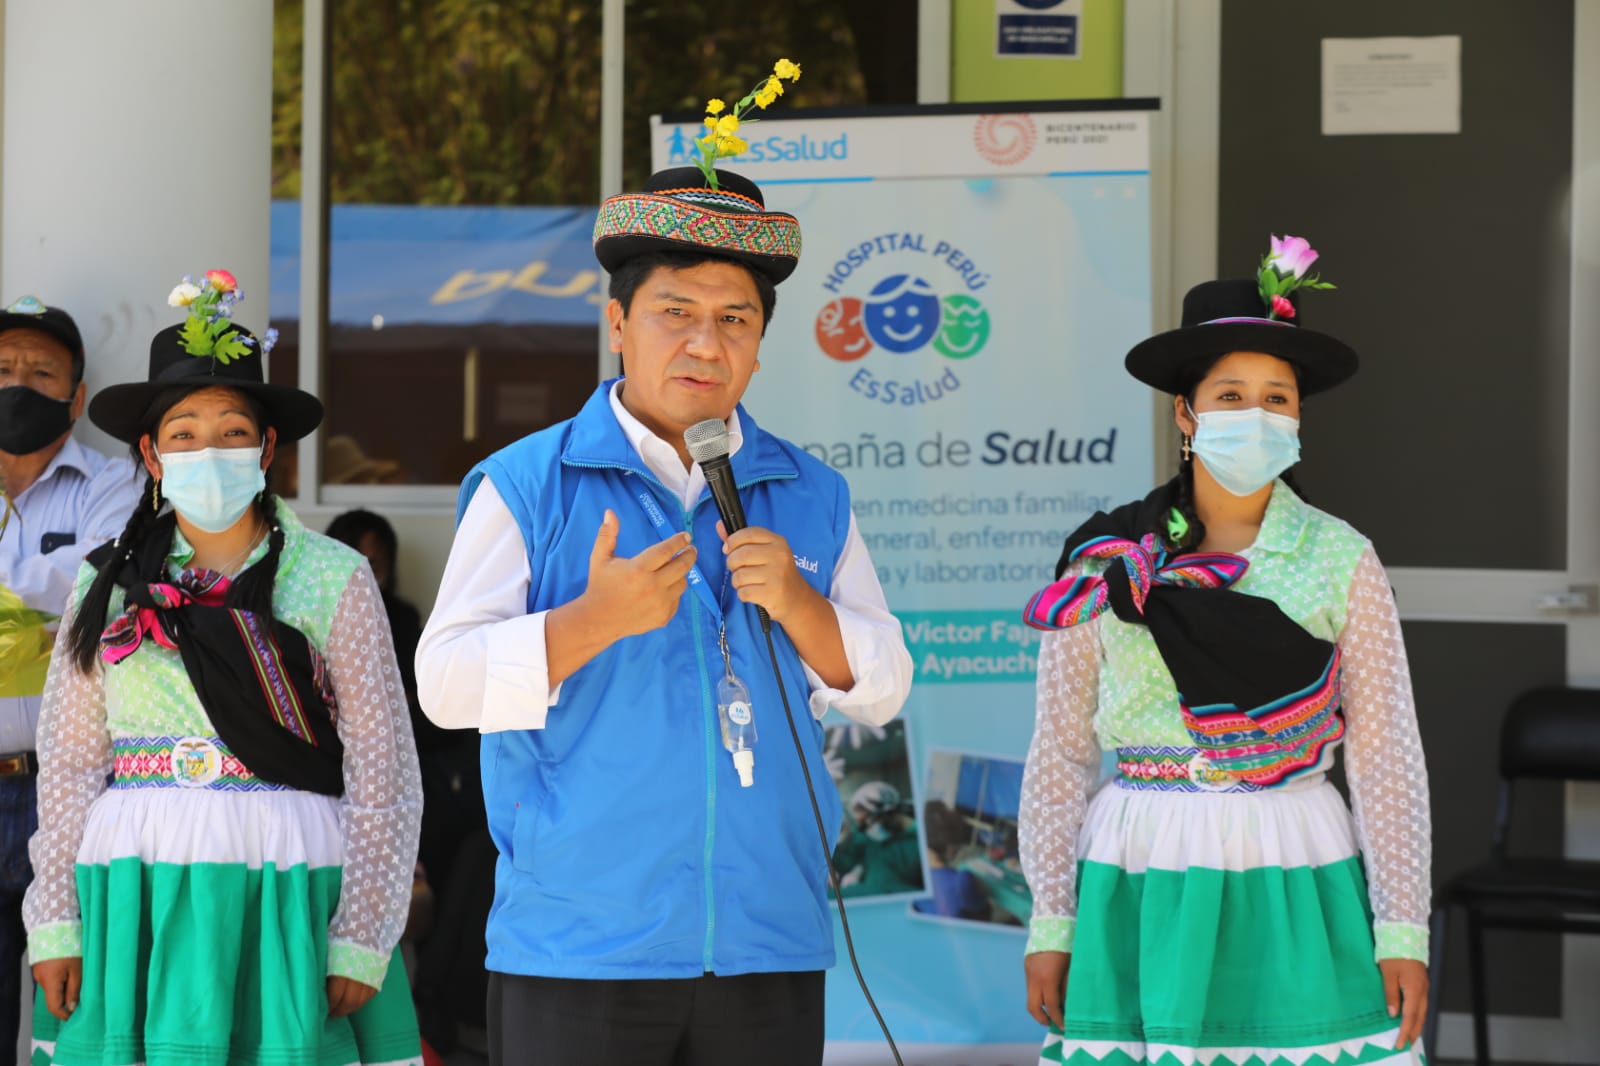 Essalud - Presidente de EsSalud supervisó campaña de atenciones médicas y cirugías en Ayacucho